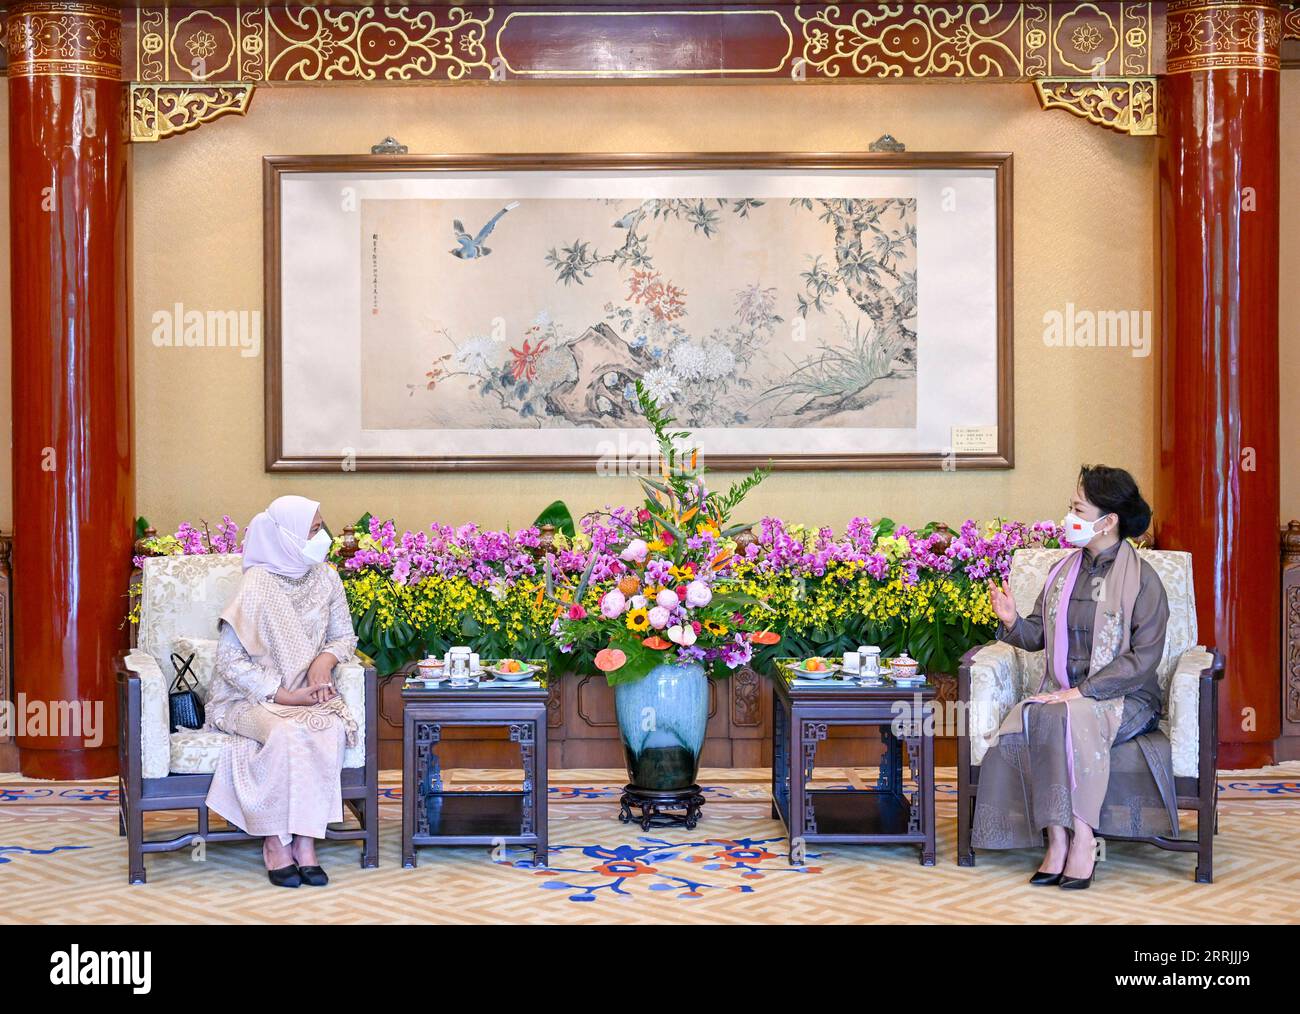 220726 -- PECHINO, 26 luglio 2022 -- Peng Liyuan, moglie del presidente cinese Xi Jinping, incontra la first lady indonesiana Iriana Joko Widodo a Pechino, capitale della Cina, 26 luglio 2022. CHINA-BEIJING-PENG LIYUAN-INDONESIA-FIRST LADY-MEETING CN XIEXHUANCHI PUBLICATIONXNOTXINXCHN Foto Stock